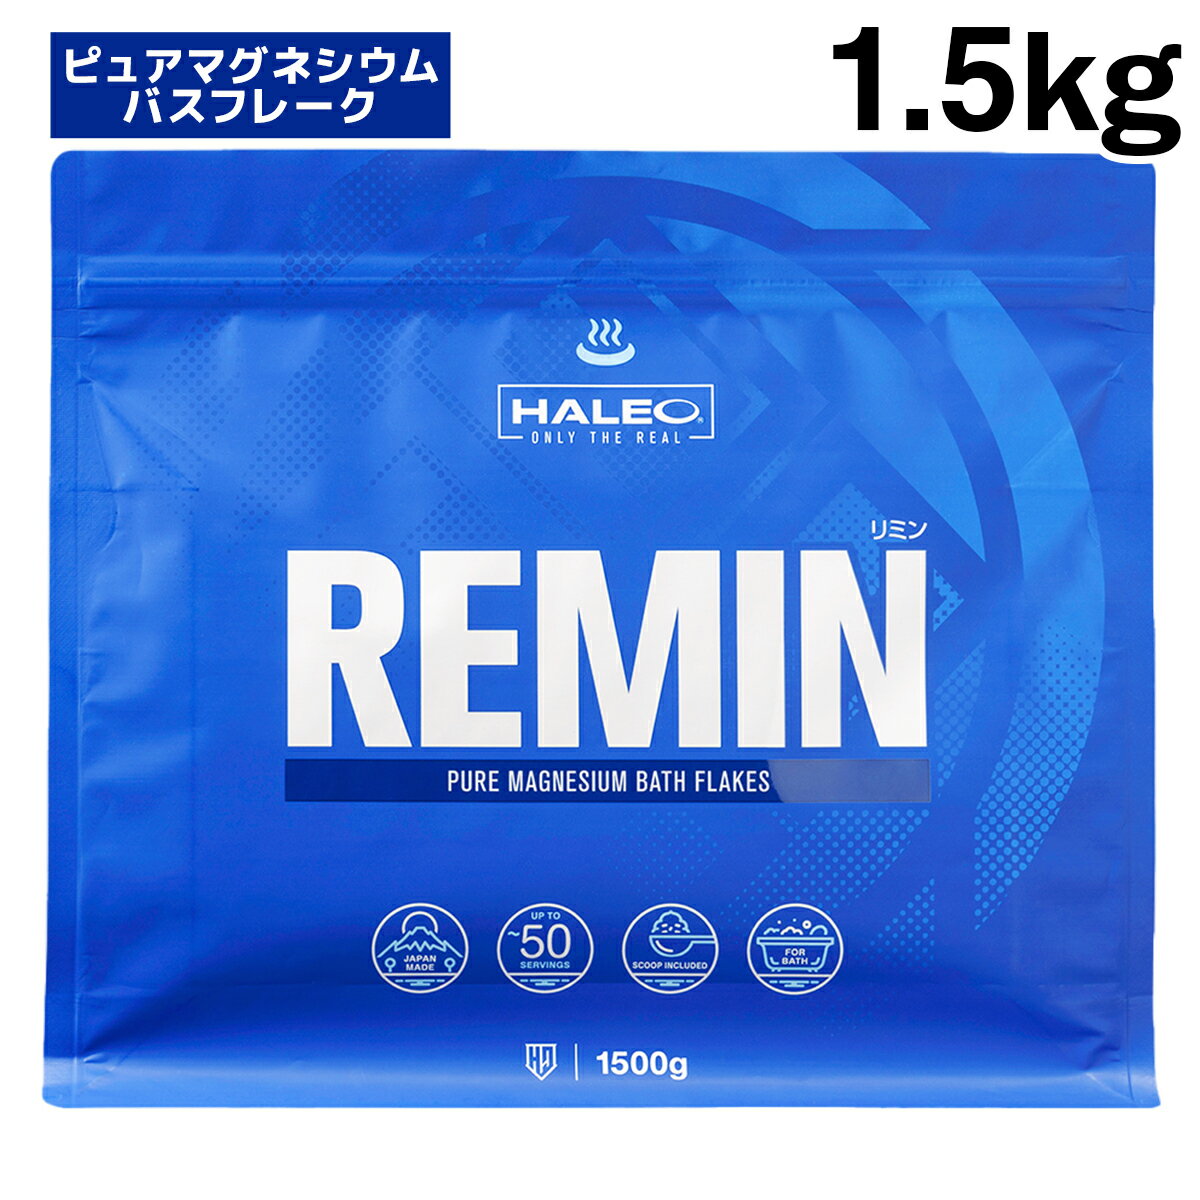 【公式】HALEO ハレオ REMIN(リミン) マグネシウムフレーク 塩化マグネシウム 入浴剤 バスフレーク 1.5kg